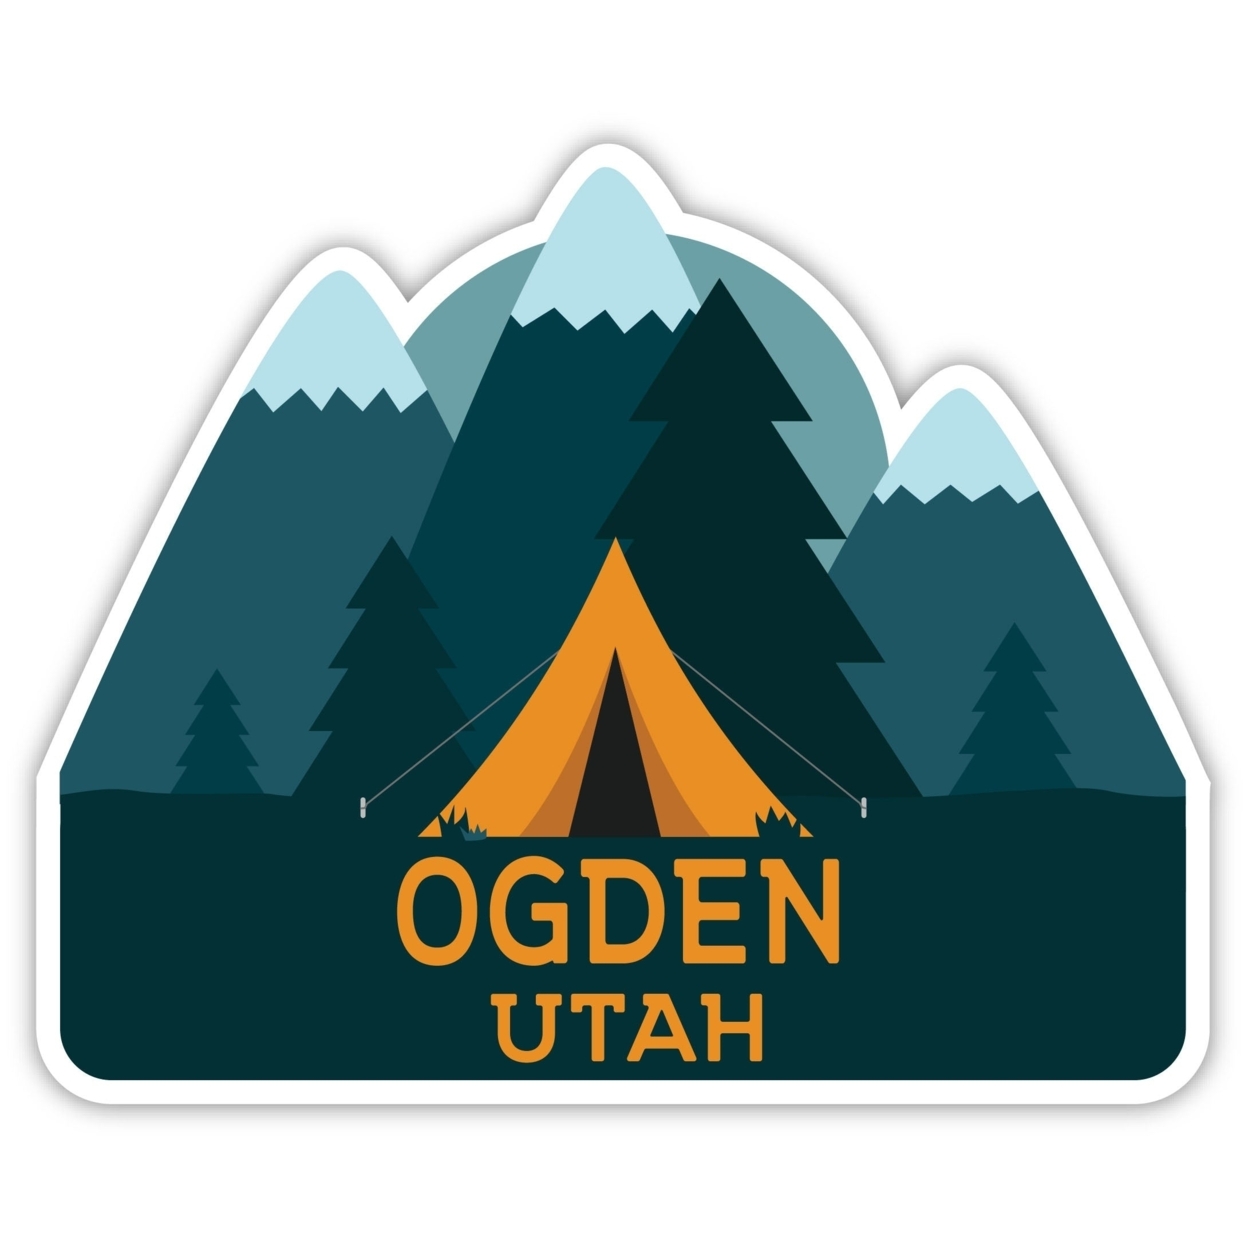 Ogden Utah Souvenir Decorative Stickers (Choose Theme And Size) - Single Unit, 4-Inch, Tent